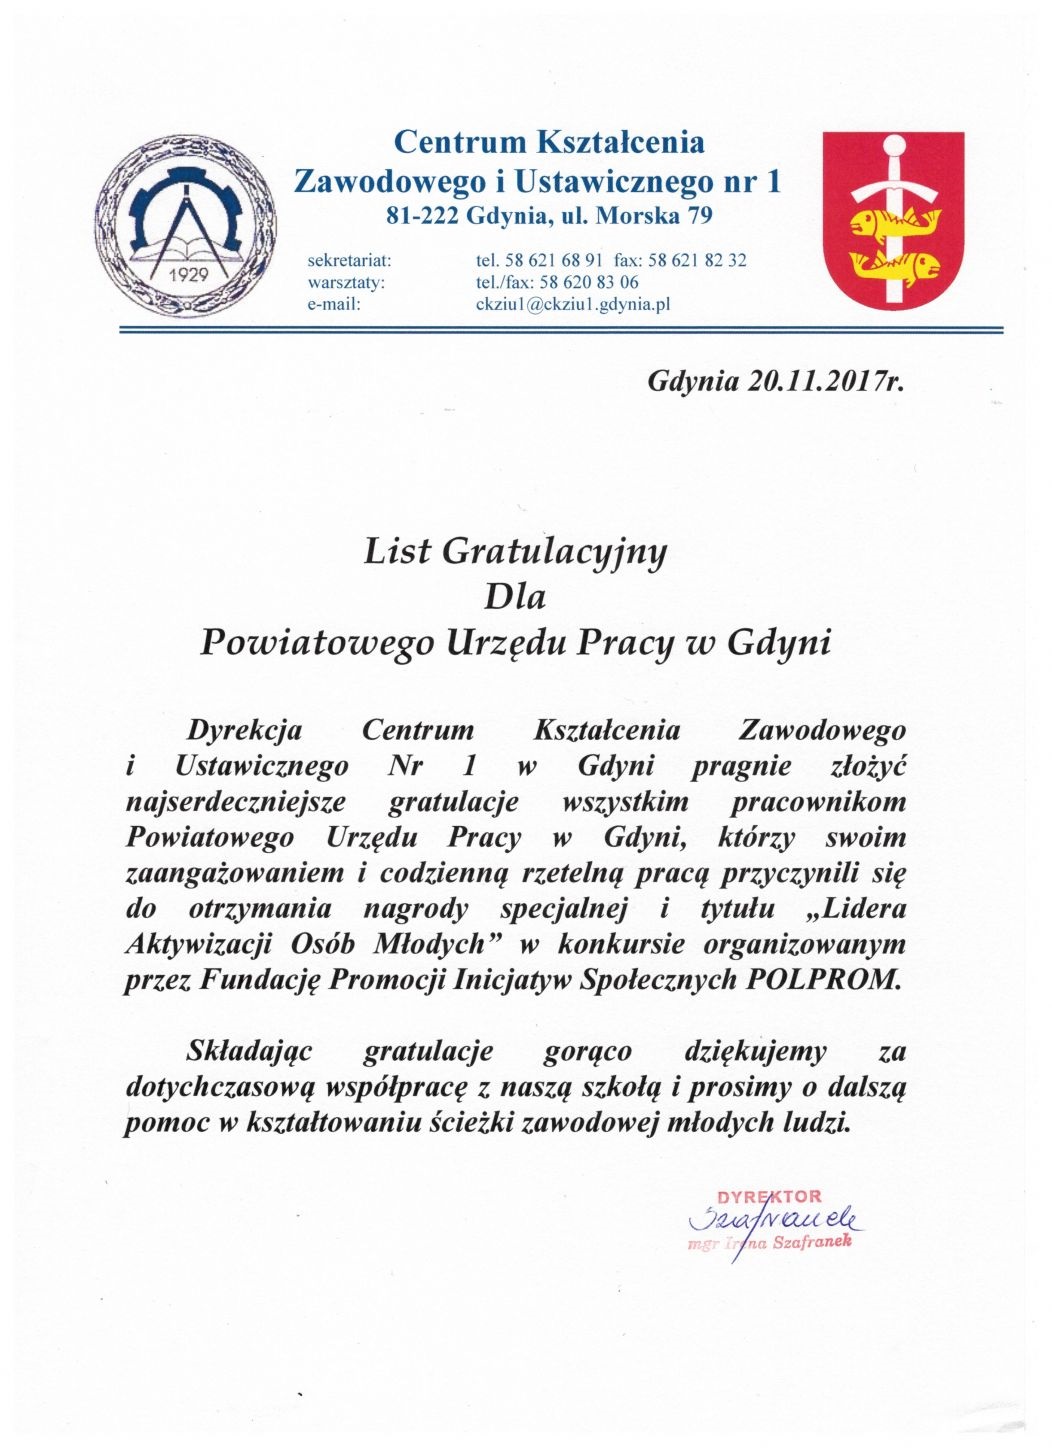 List Gratulacyjny dla Powiatowego Urzędu Pracy w Gdyni